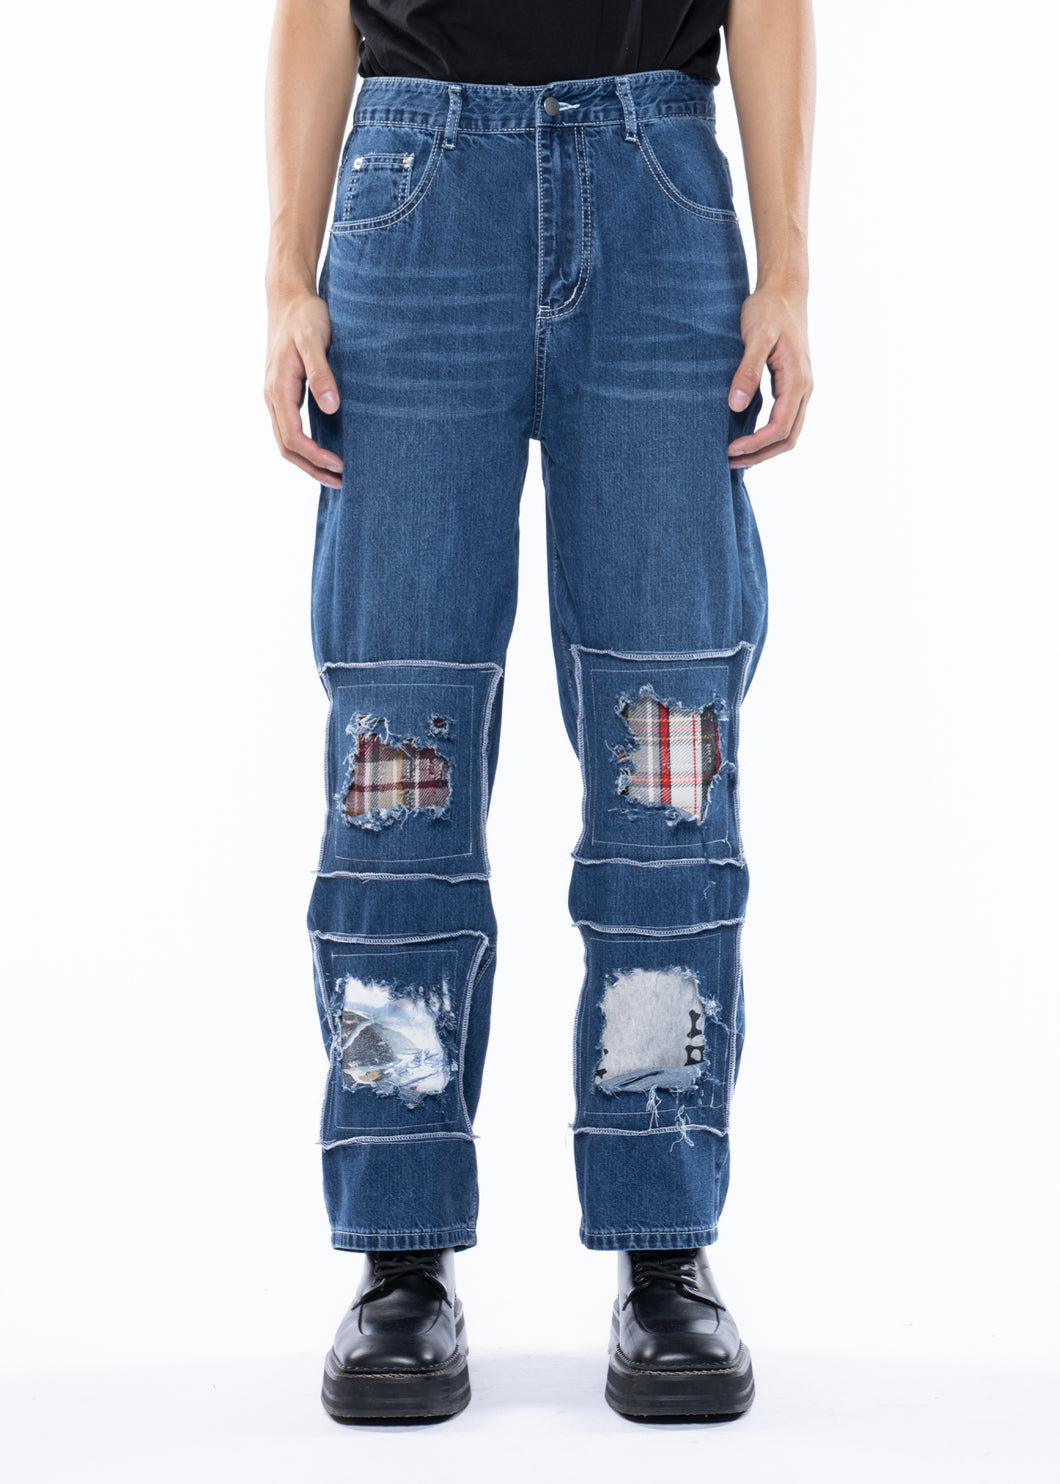 RANDOMEFFECT Square Jeans